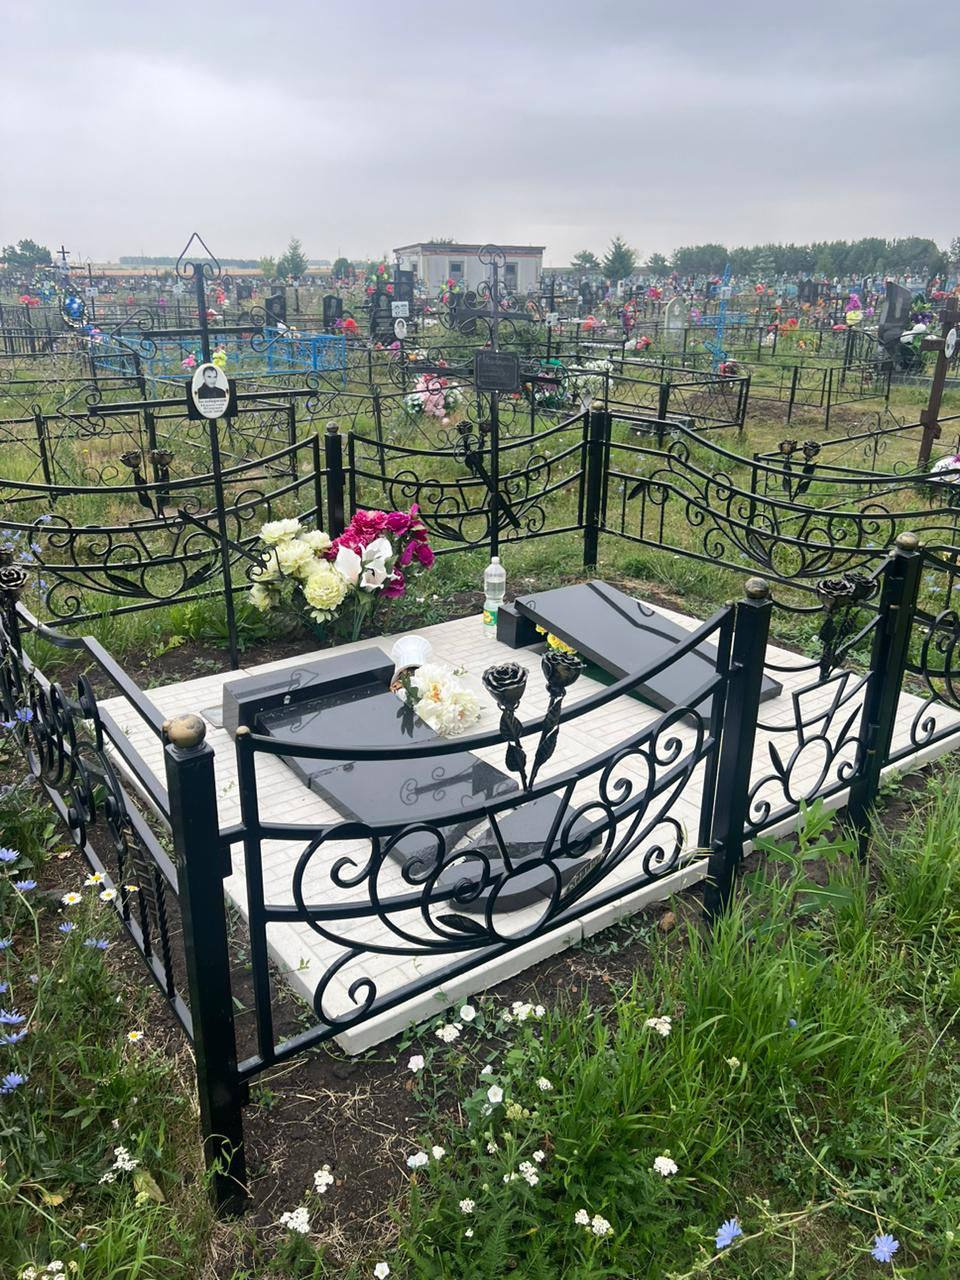 алексеевское кладбище в москве